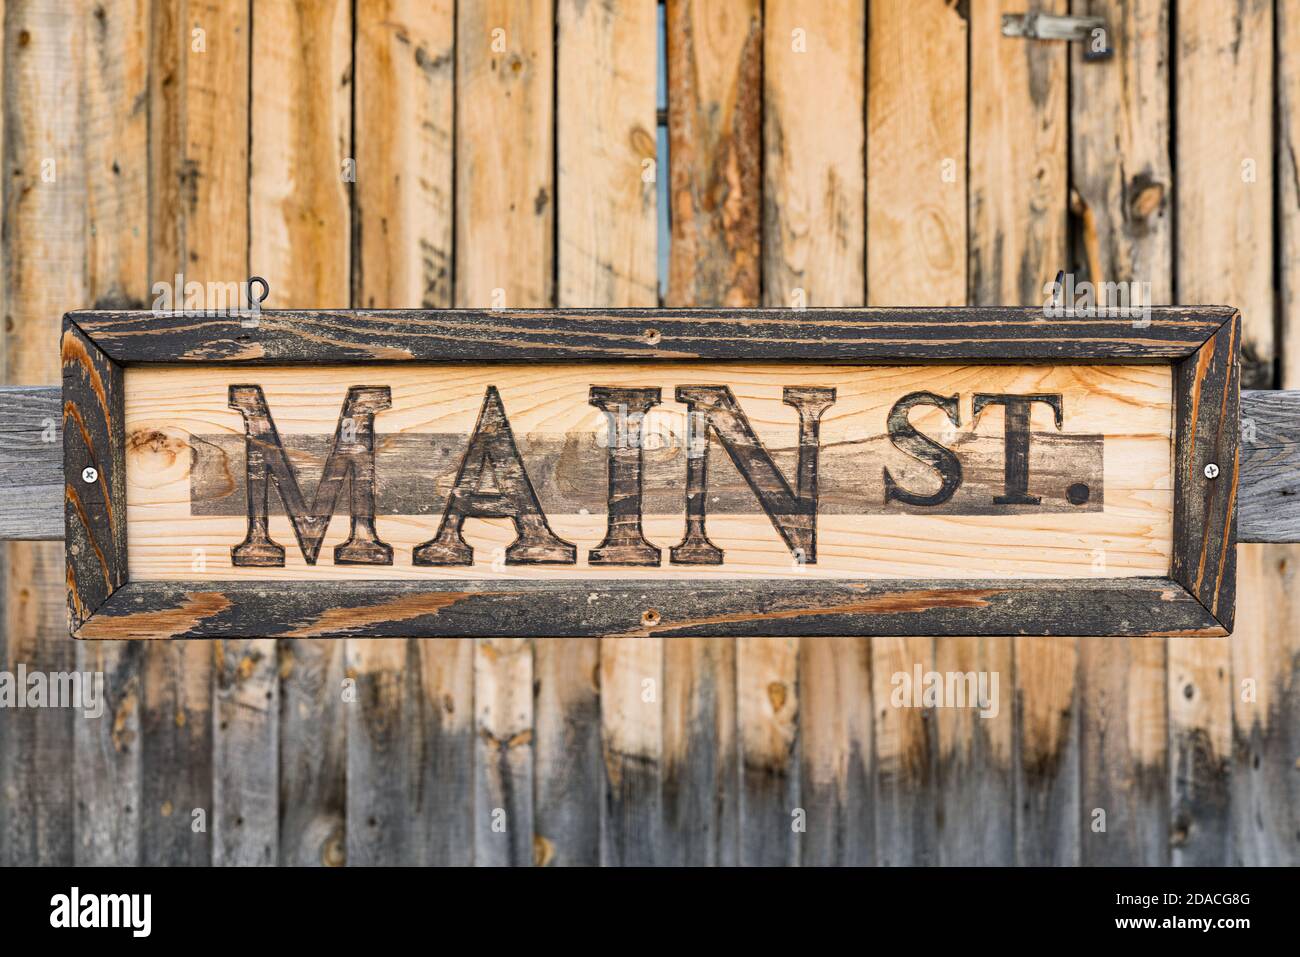 Alte verwitterte vertikale Kiefernholzplanke Hintergrund mit Main Street Zeichen Stockfoto